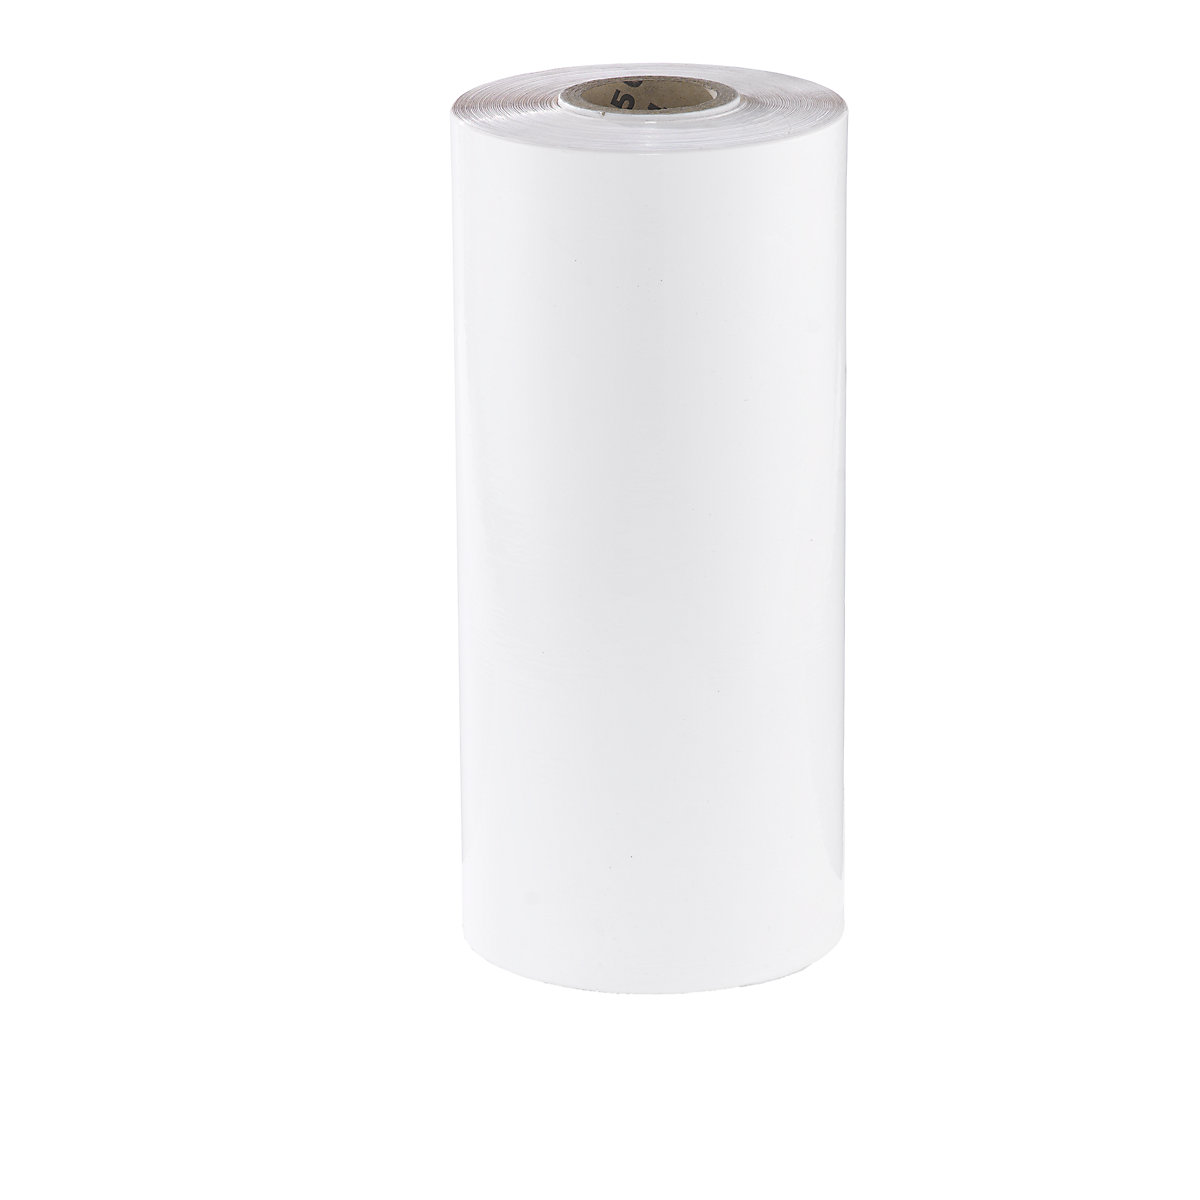 Película estirável para máquinas em PE, largura 500 mm, a partir de 2 embalagens, espessura da película 23 µm, embalagem de 38 unid., branco-2